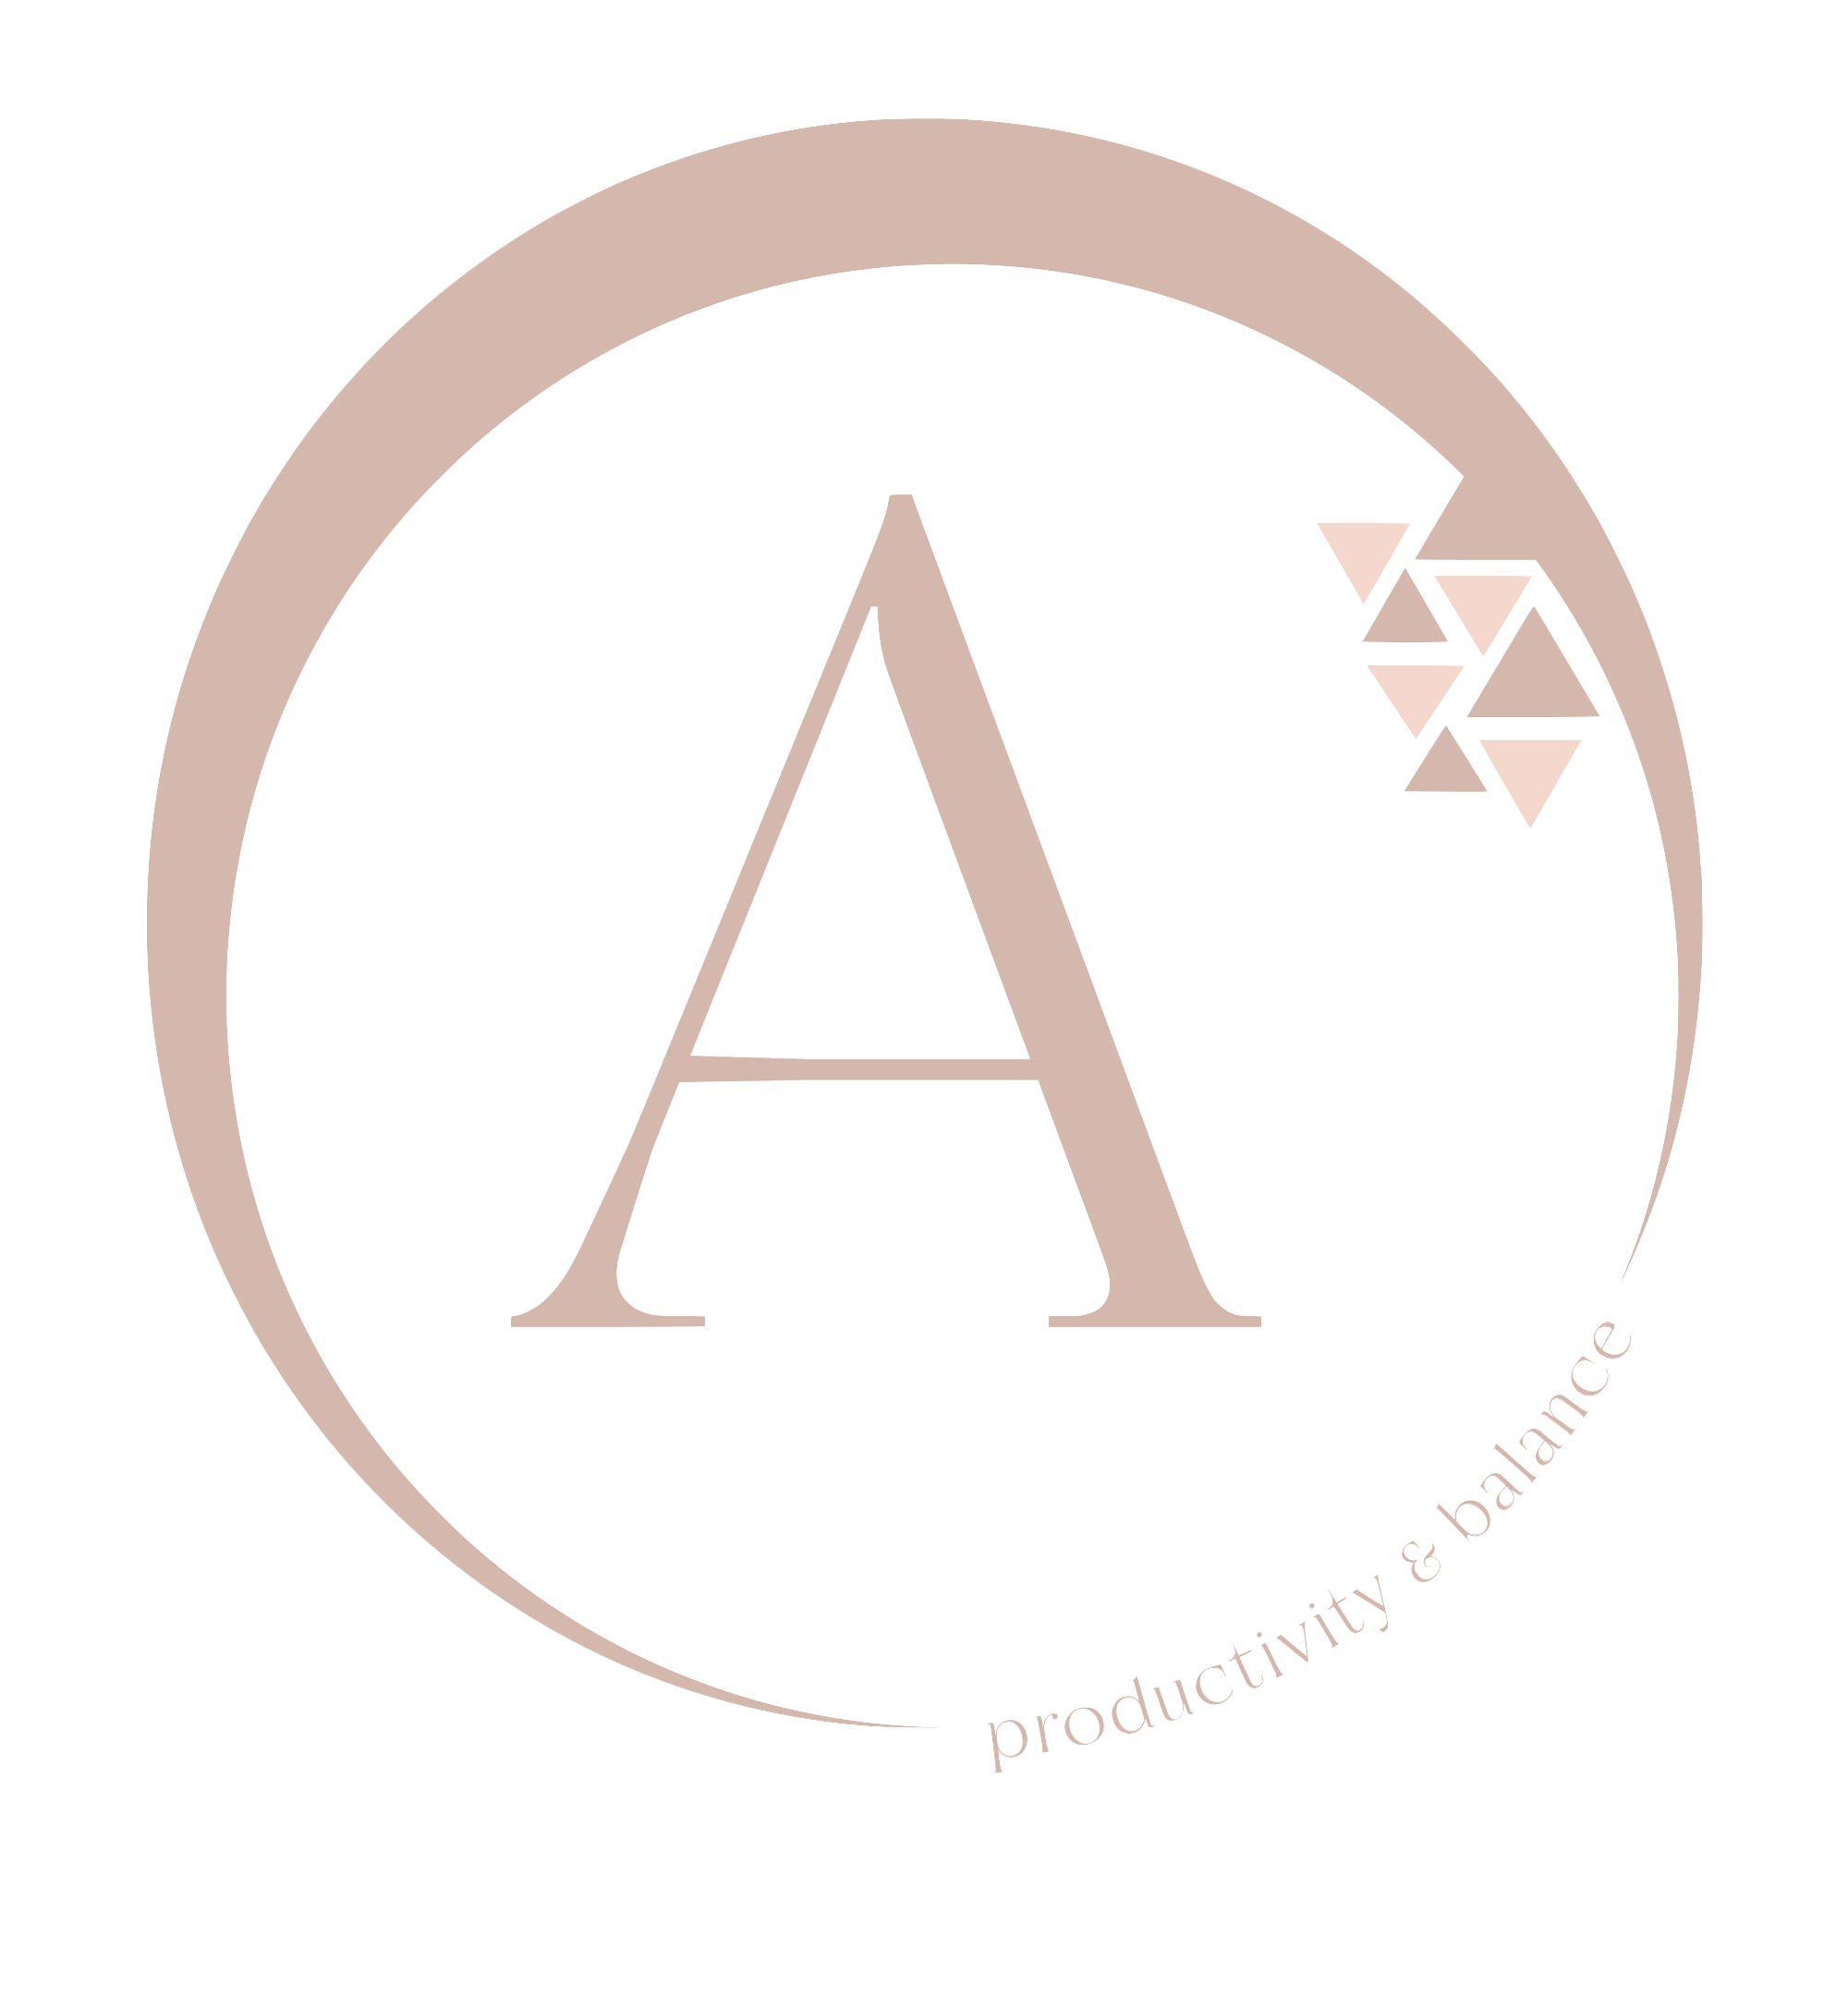 Alejandra Marqués logo